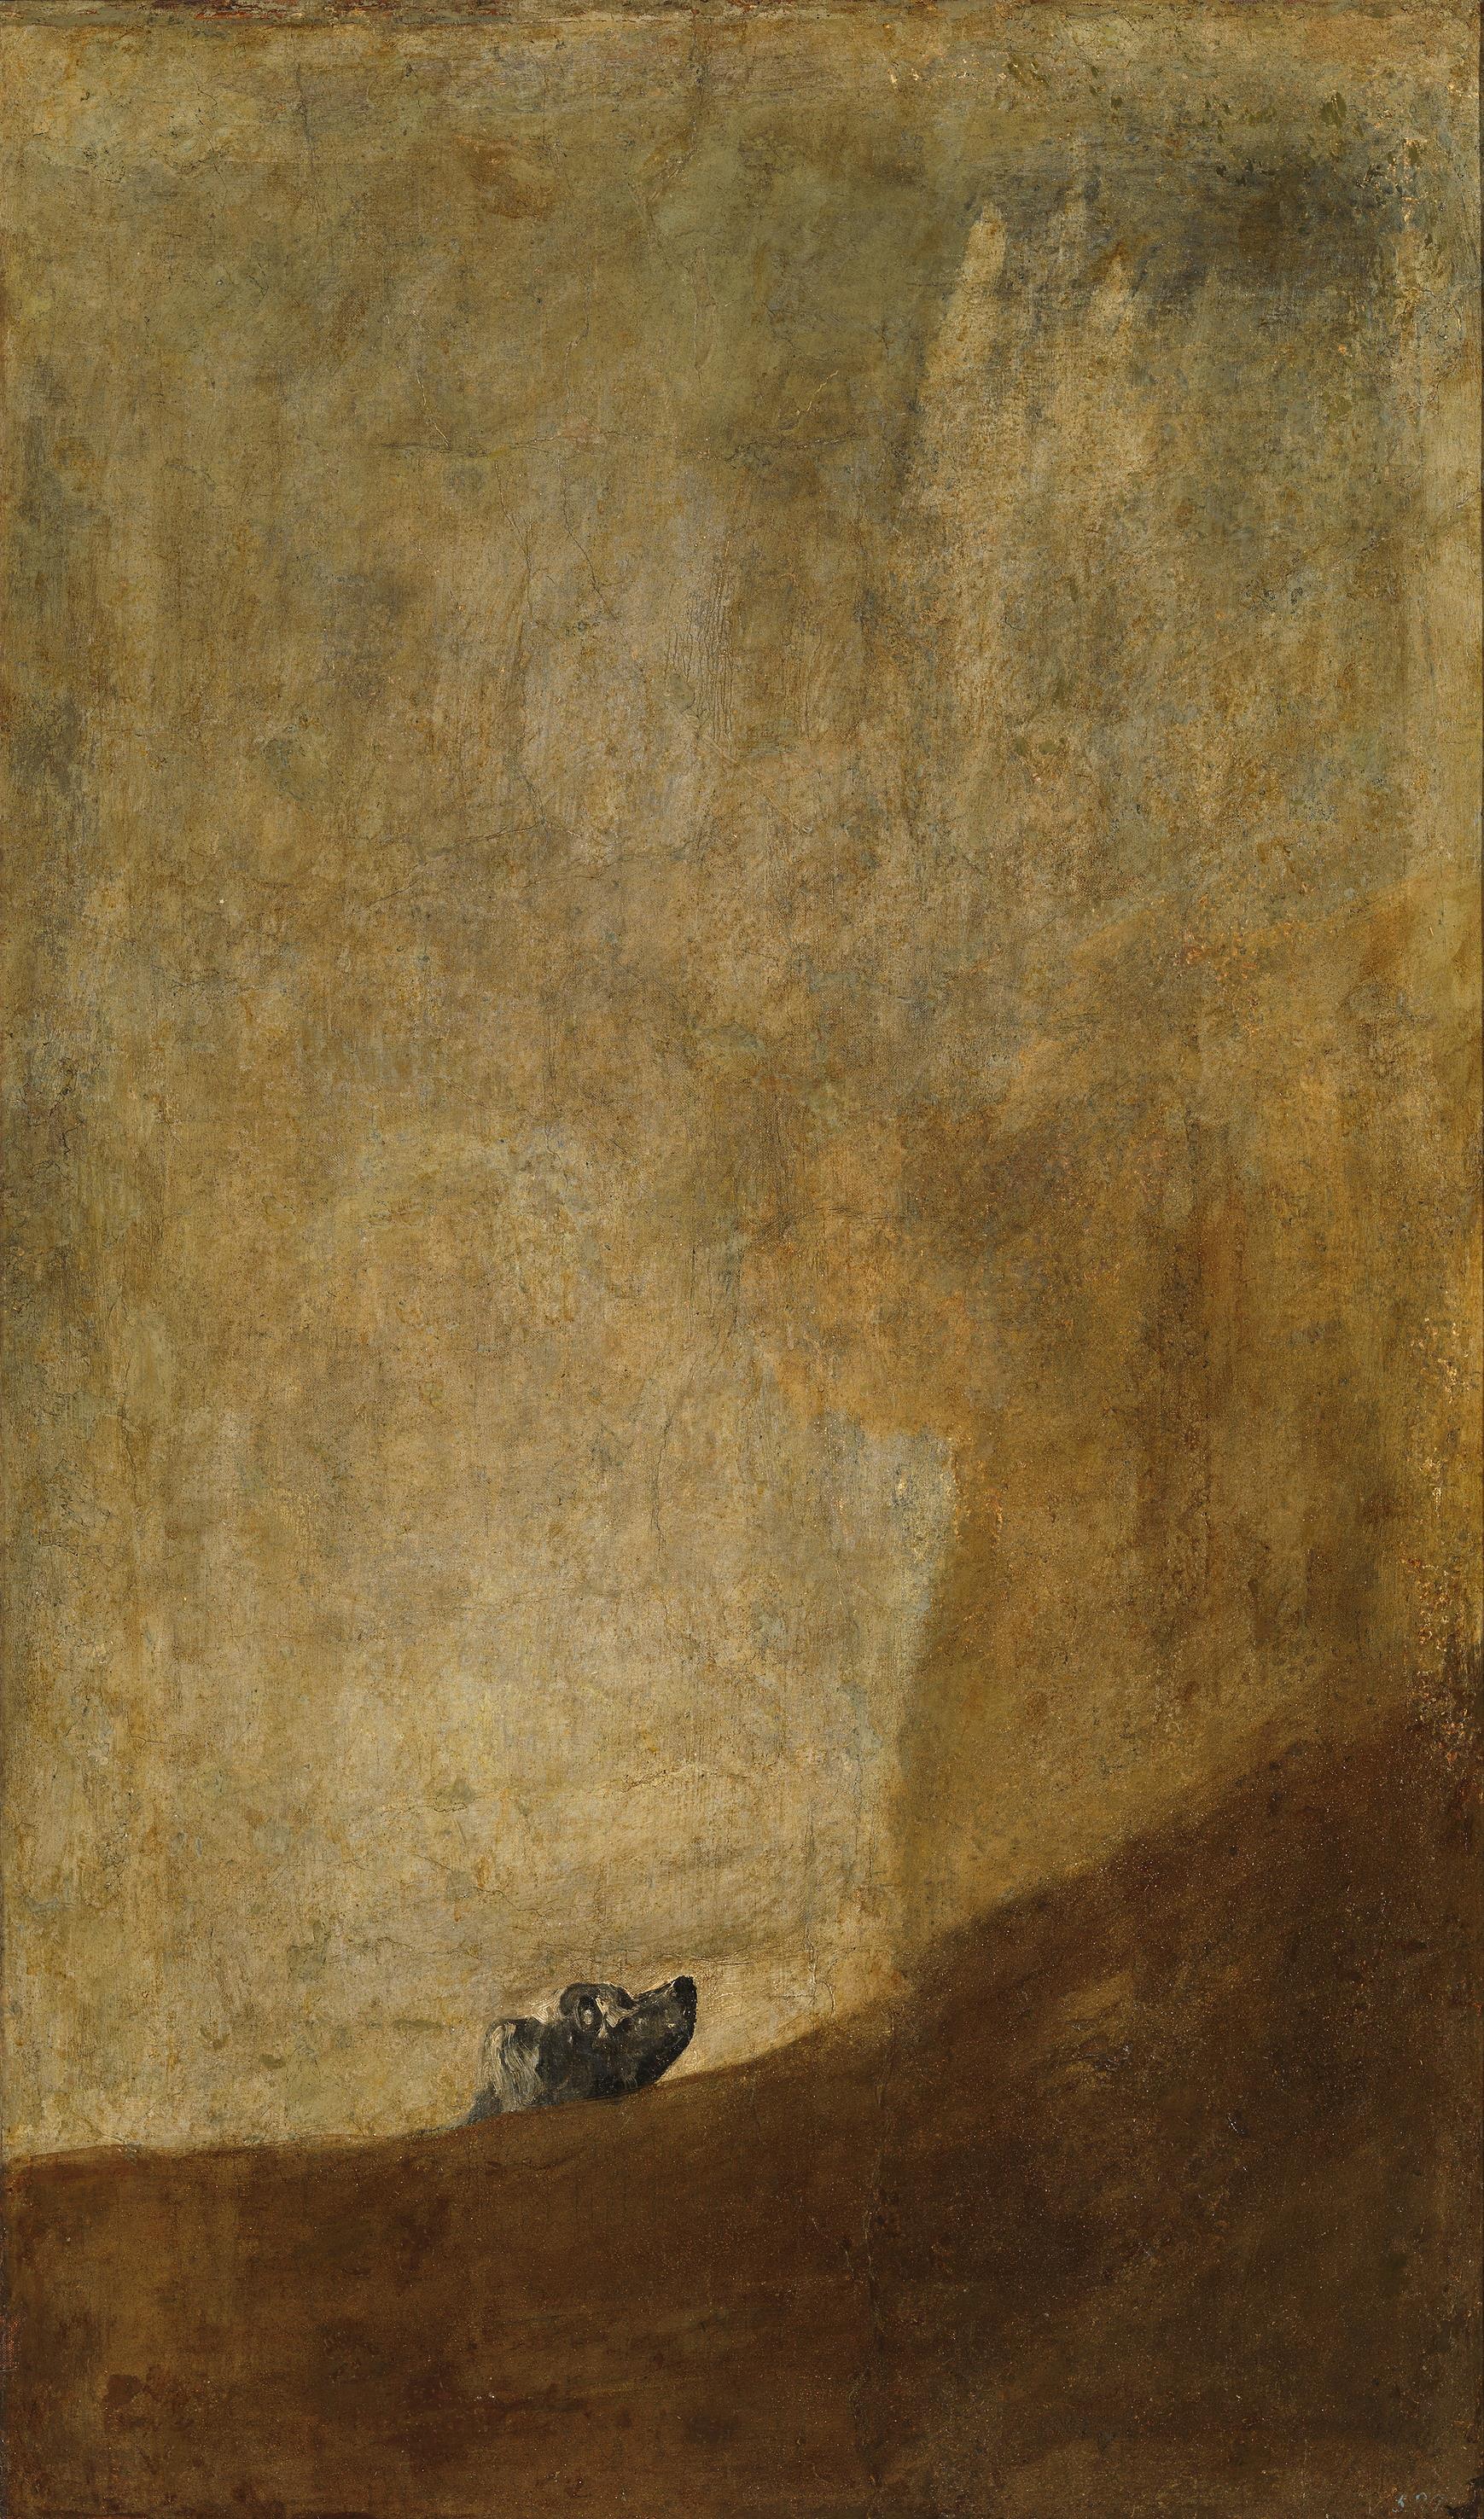 The Dog by Francisco Goya - ca. 1819-1823 - 131.5 cm × 79.3 cm Museo del Prado